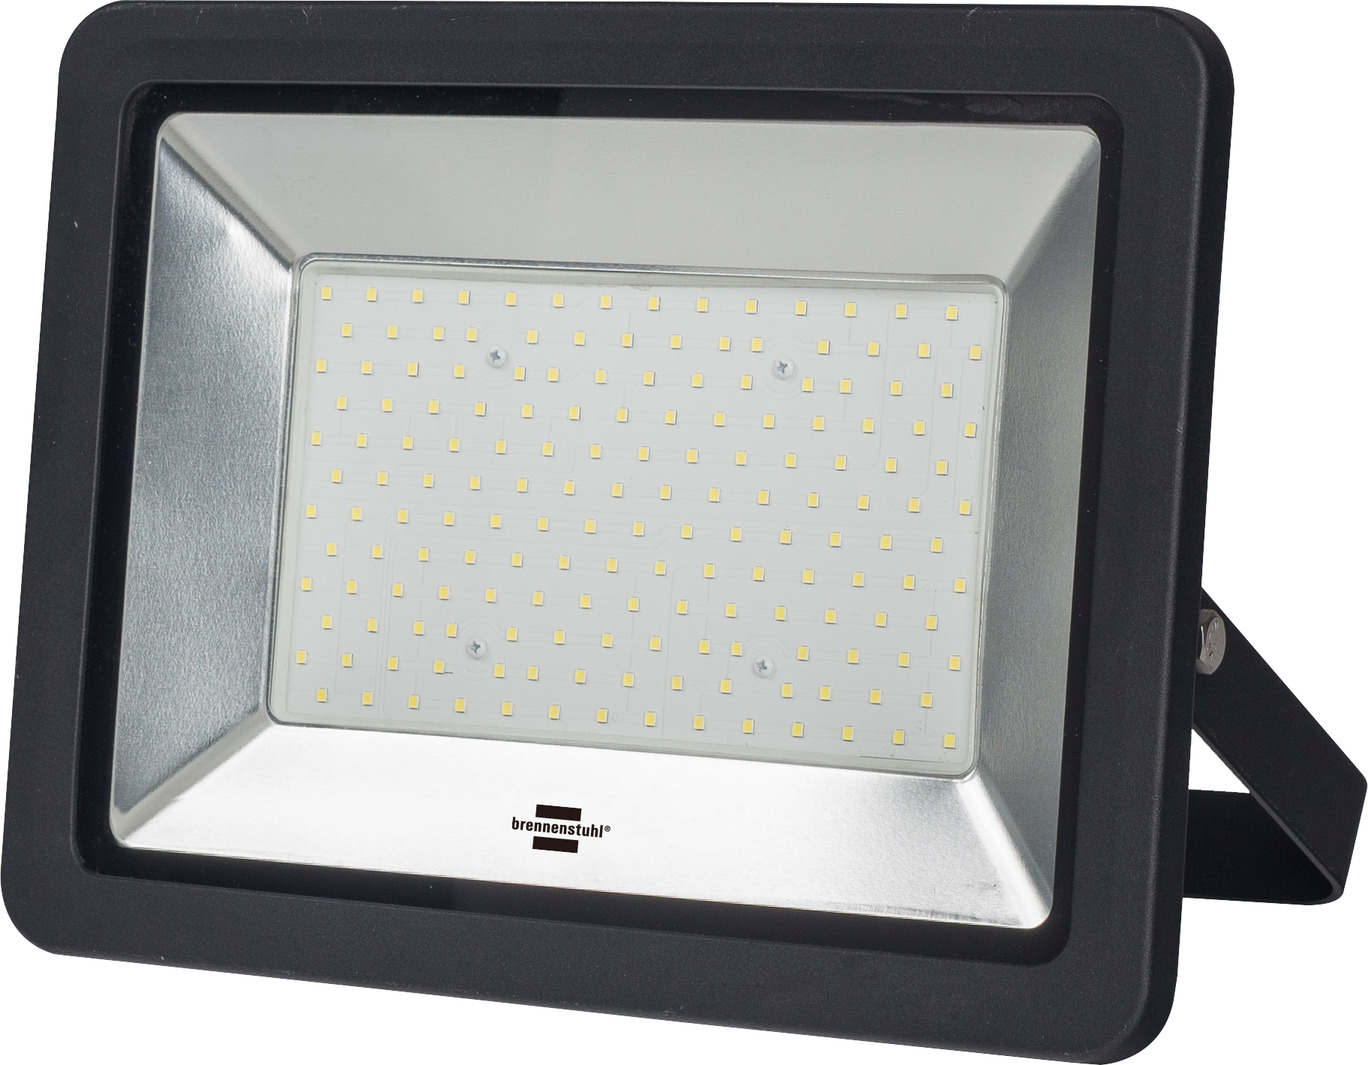 Slim SMD-LED 148 W, 12800 lm, IP65, schwarz, mit Anschlussklemme | brennenstuhl®